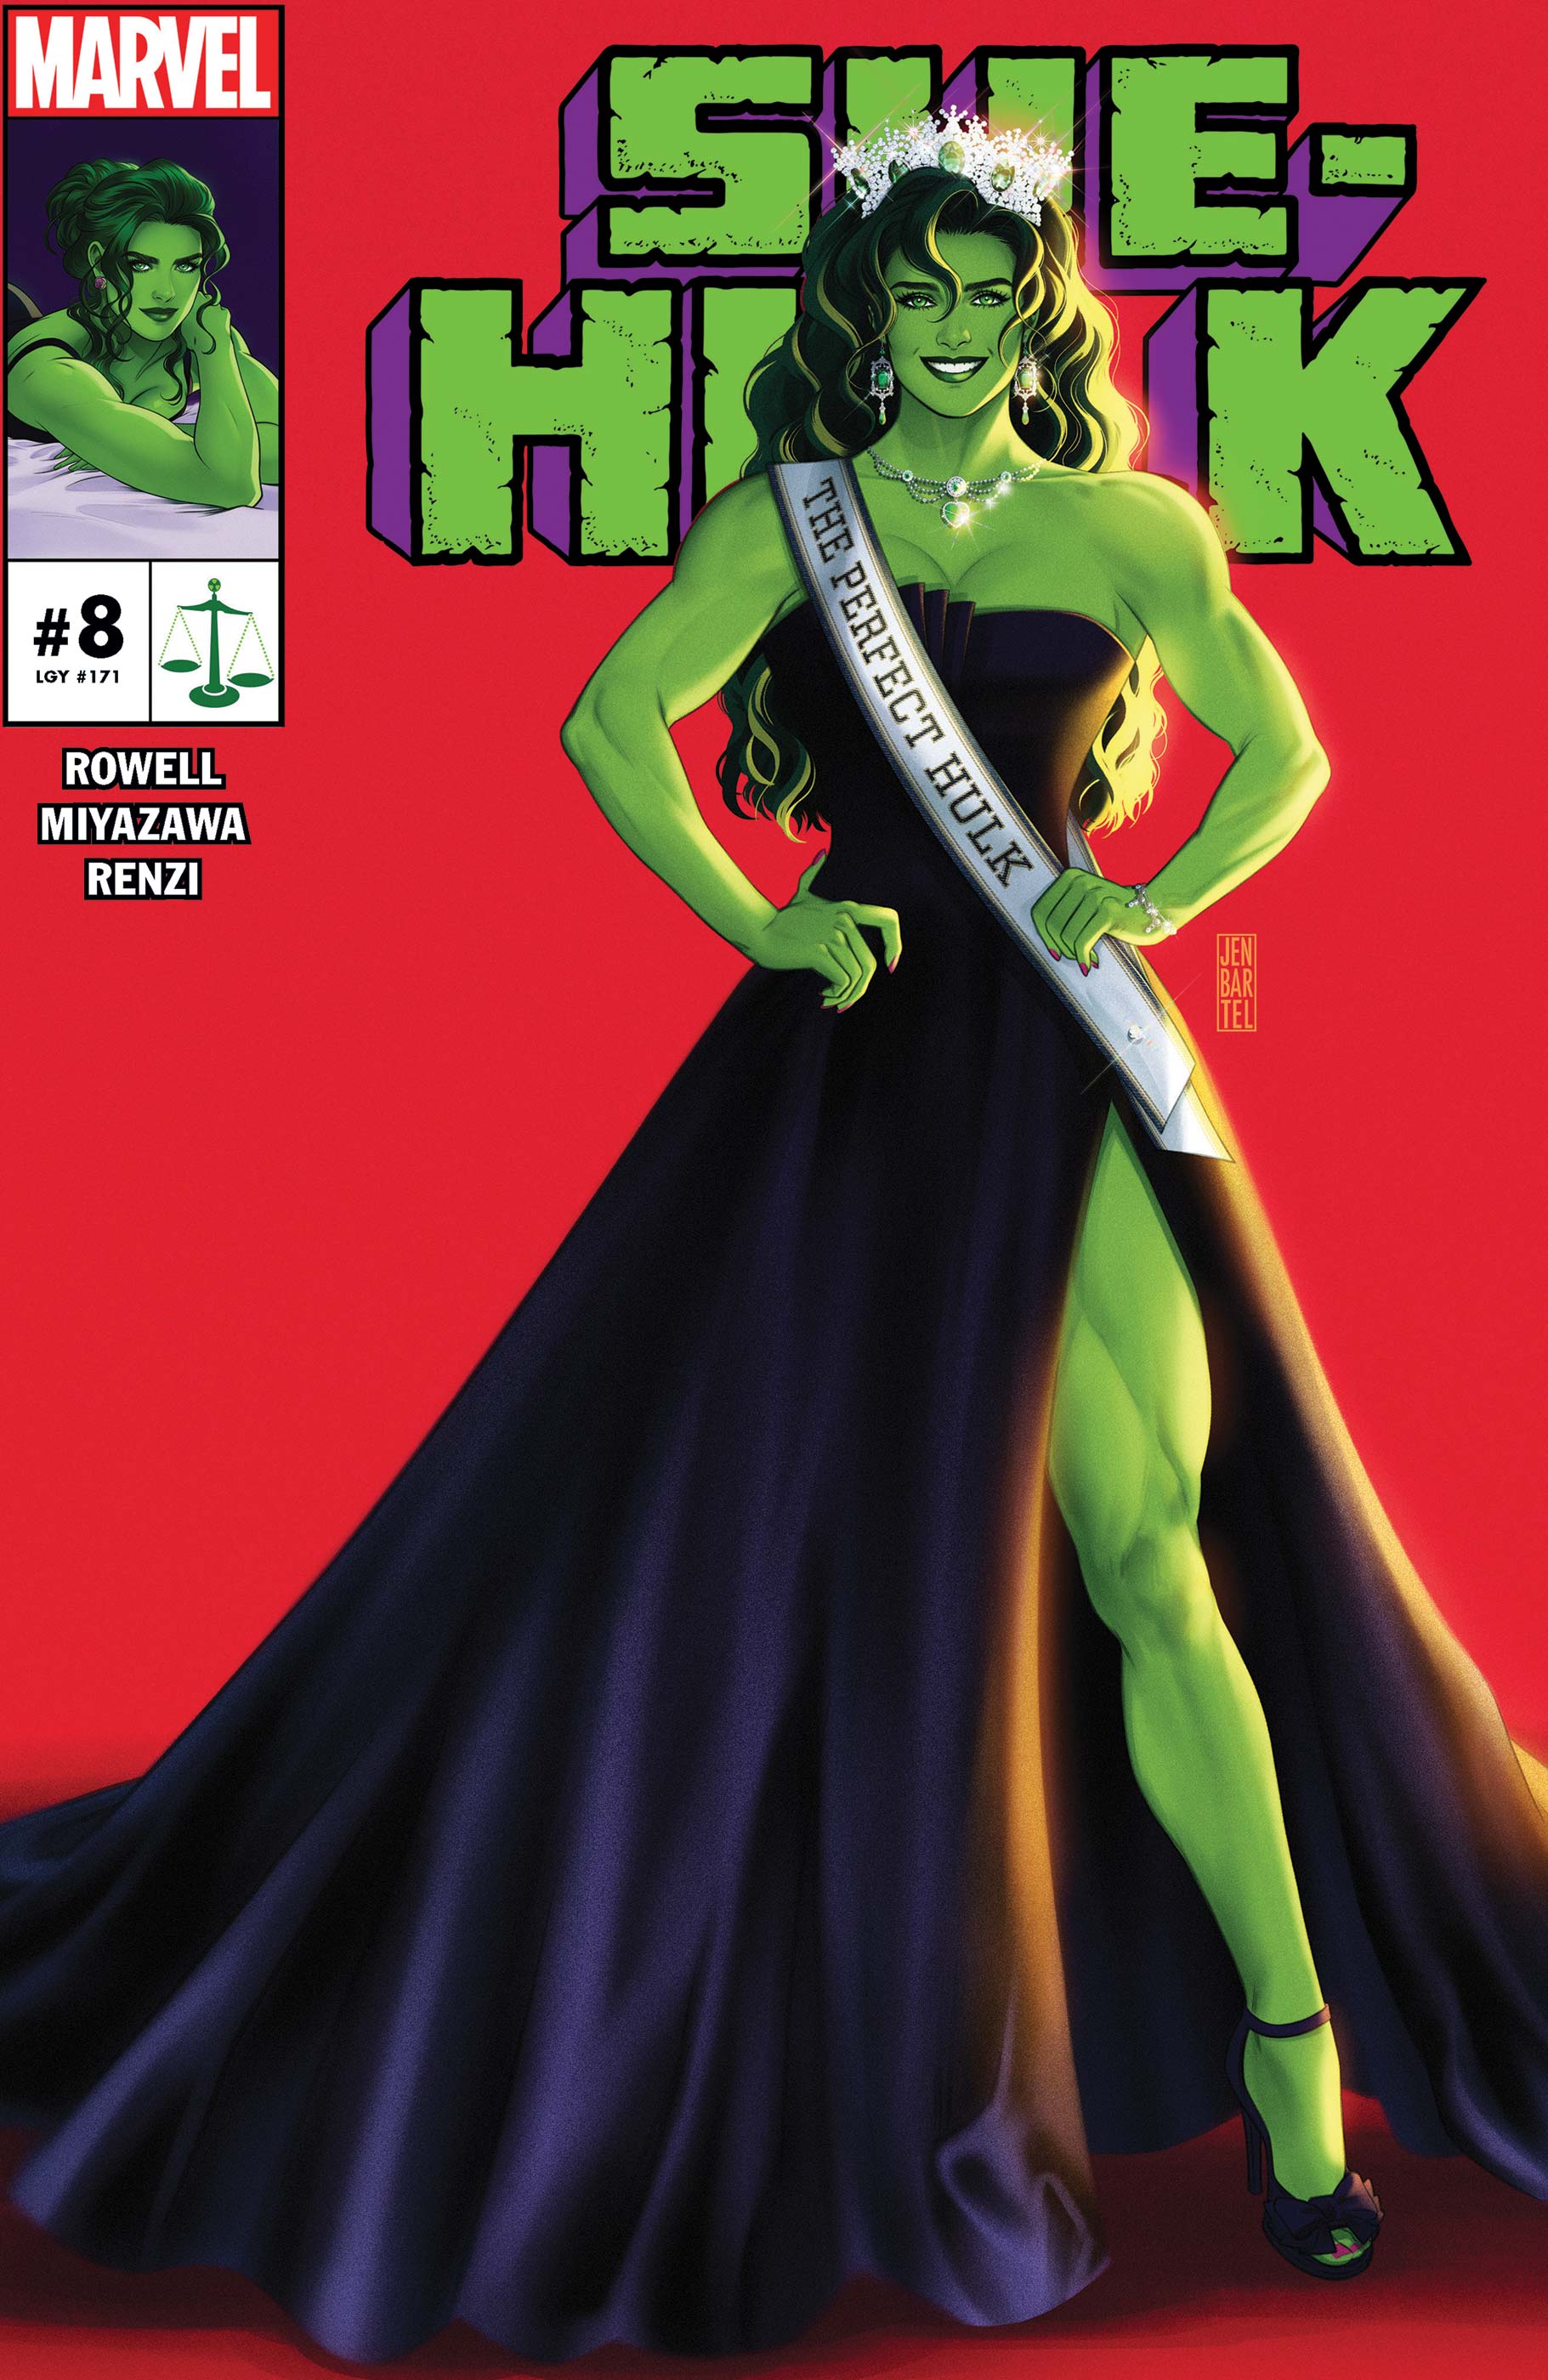 She-Hulk (2022) #8